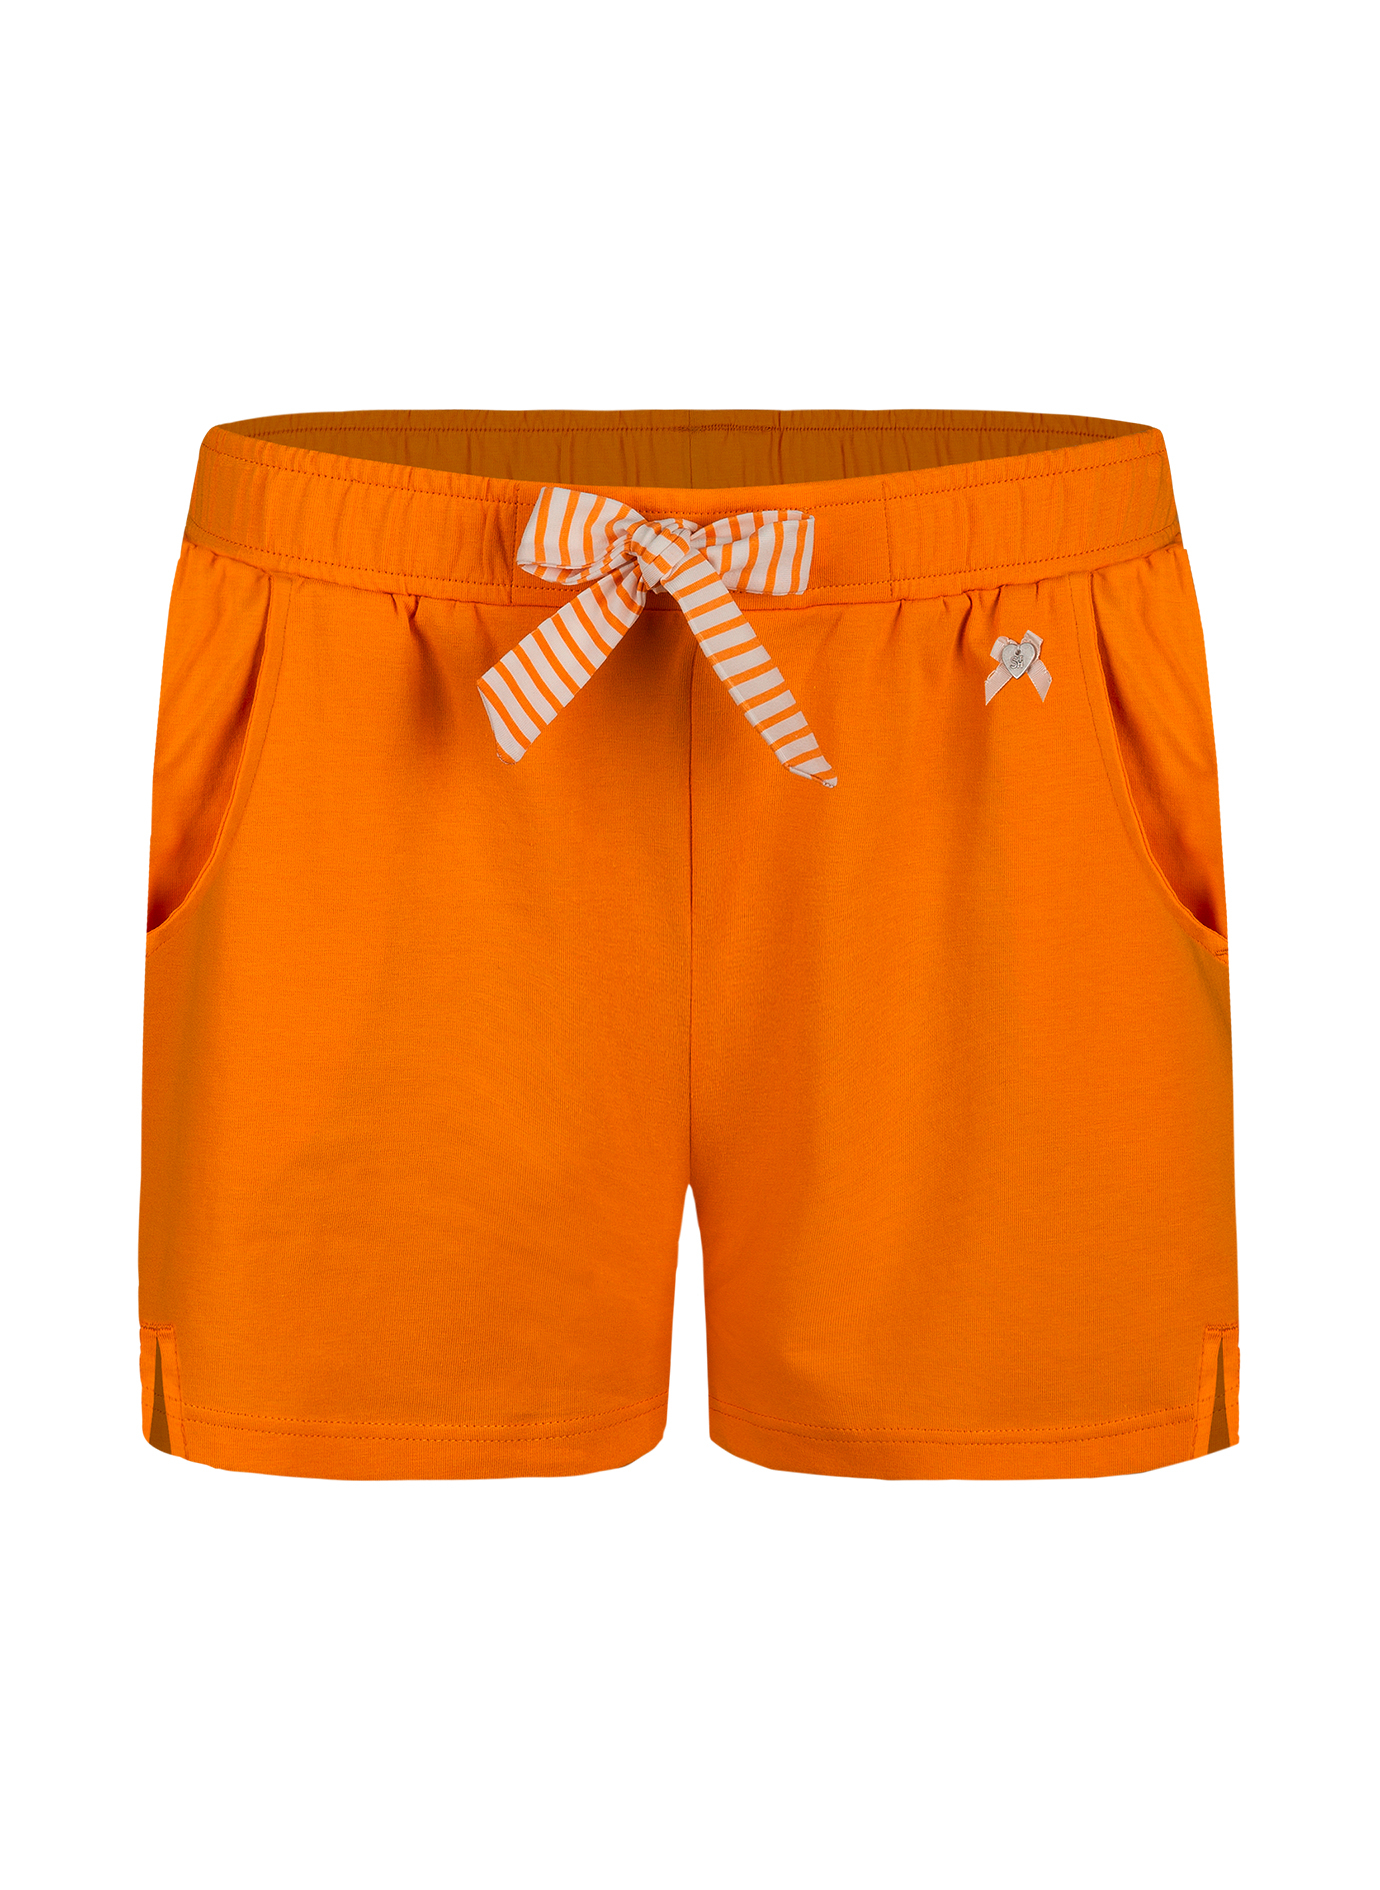 Damen-Shorts Orange